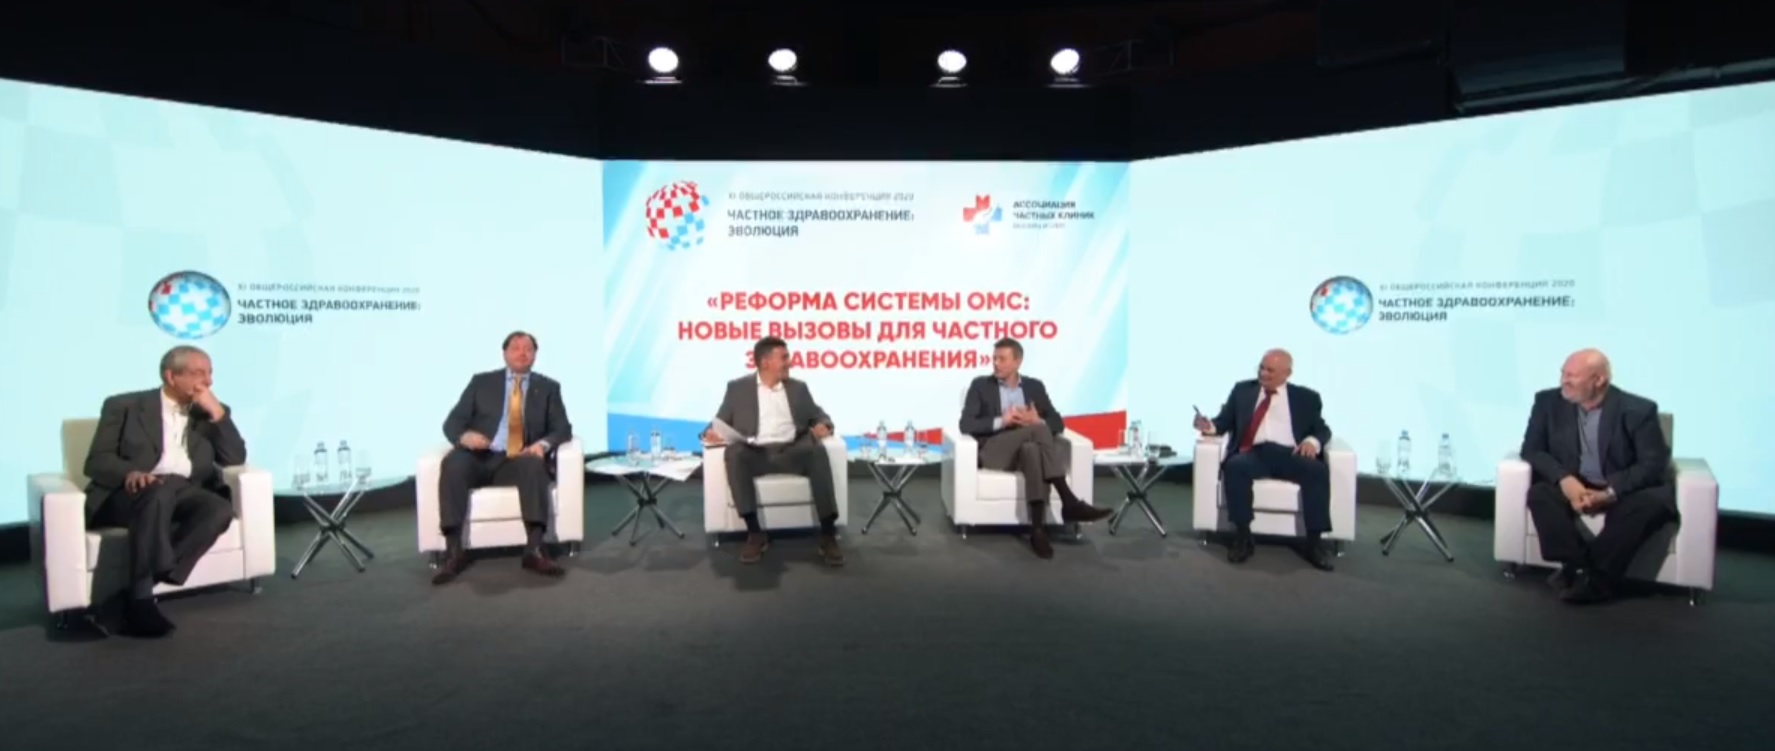 В Москве прошла XI конференция «Частное здравоохранение: Эволюция»